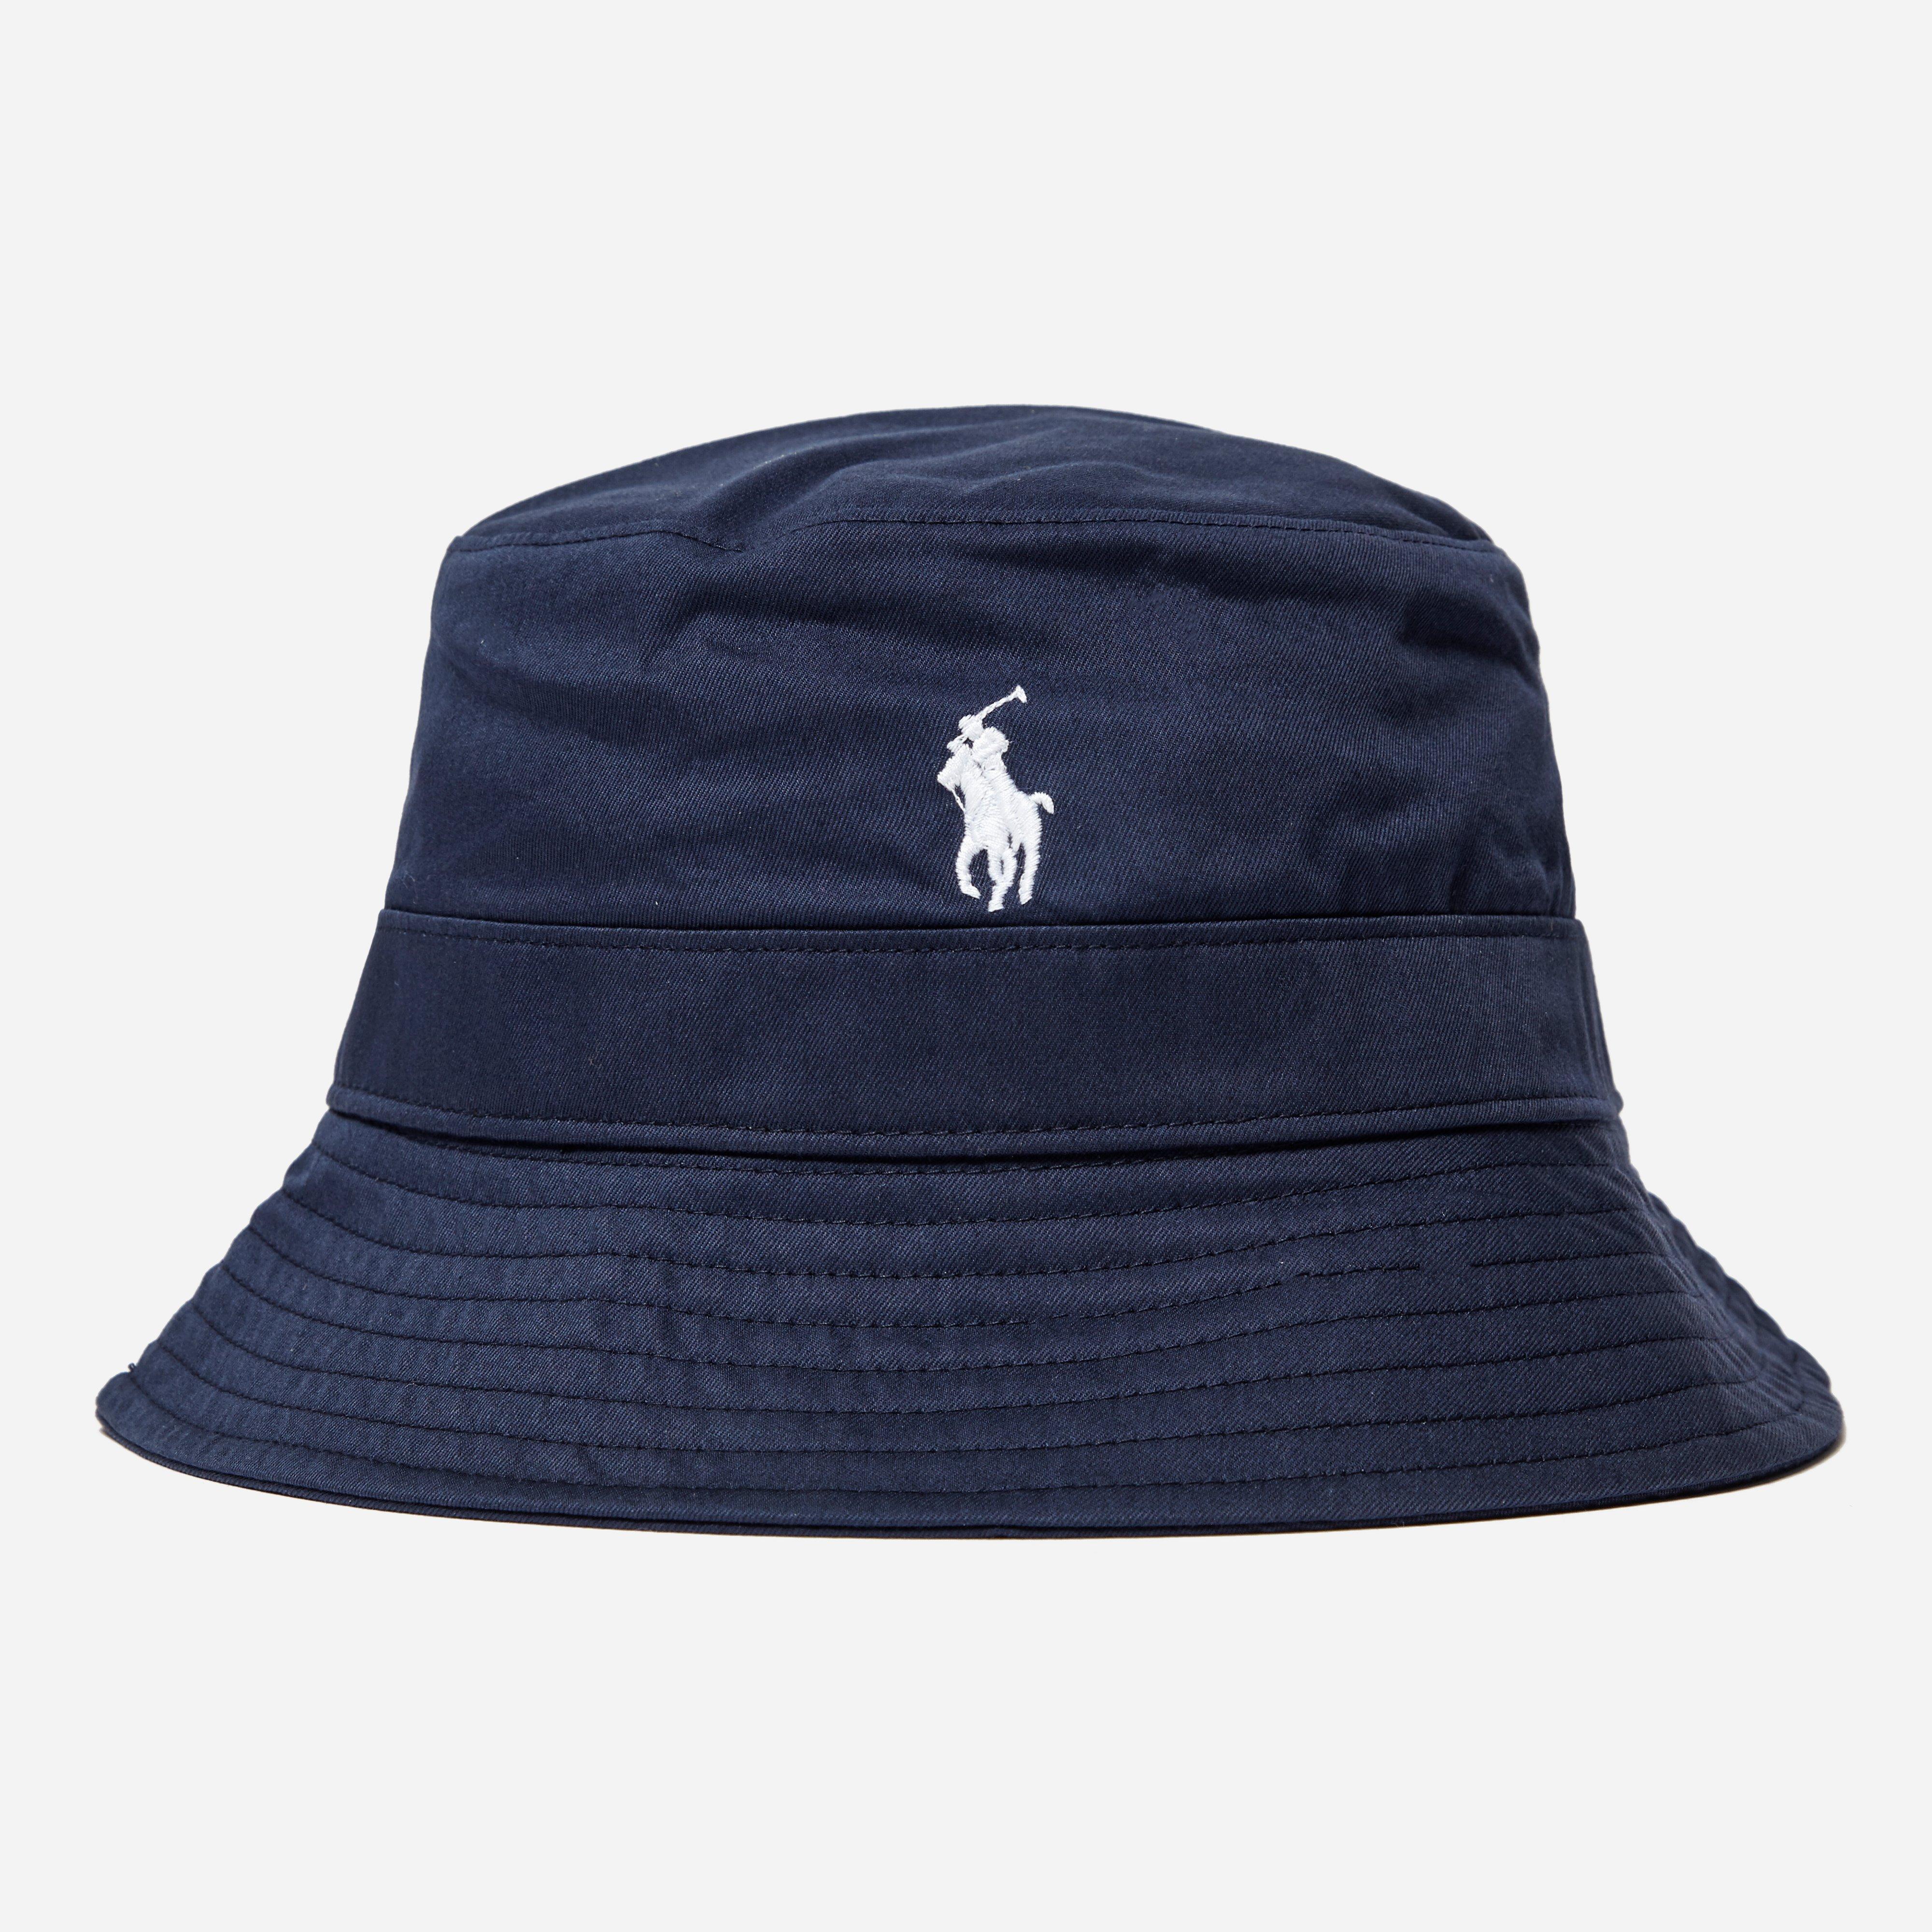 Polo Ralph Lauren Bucket Hat in Navy (Blue) for Men - Lyst